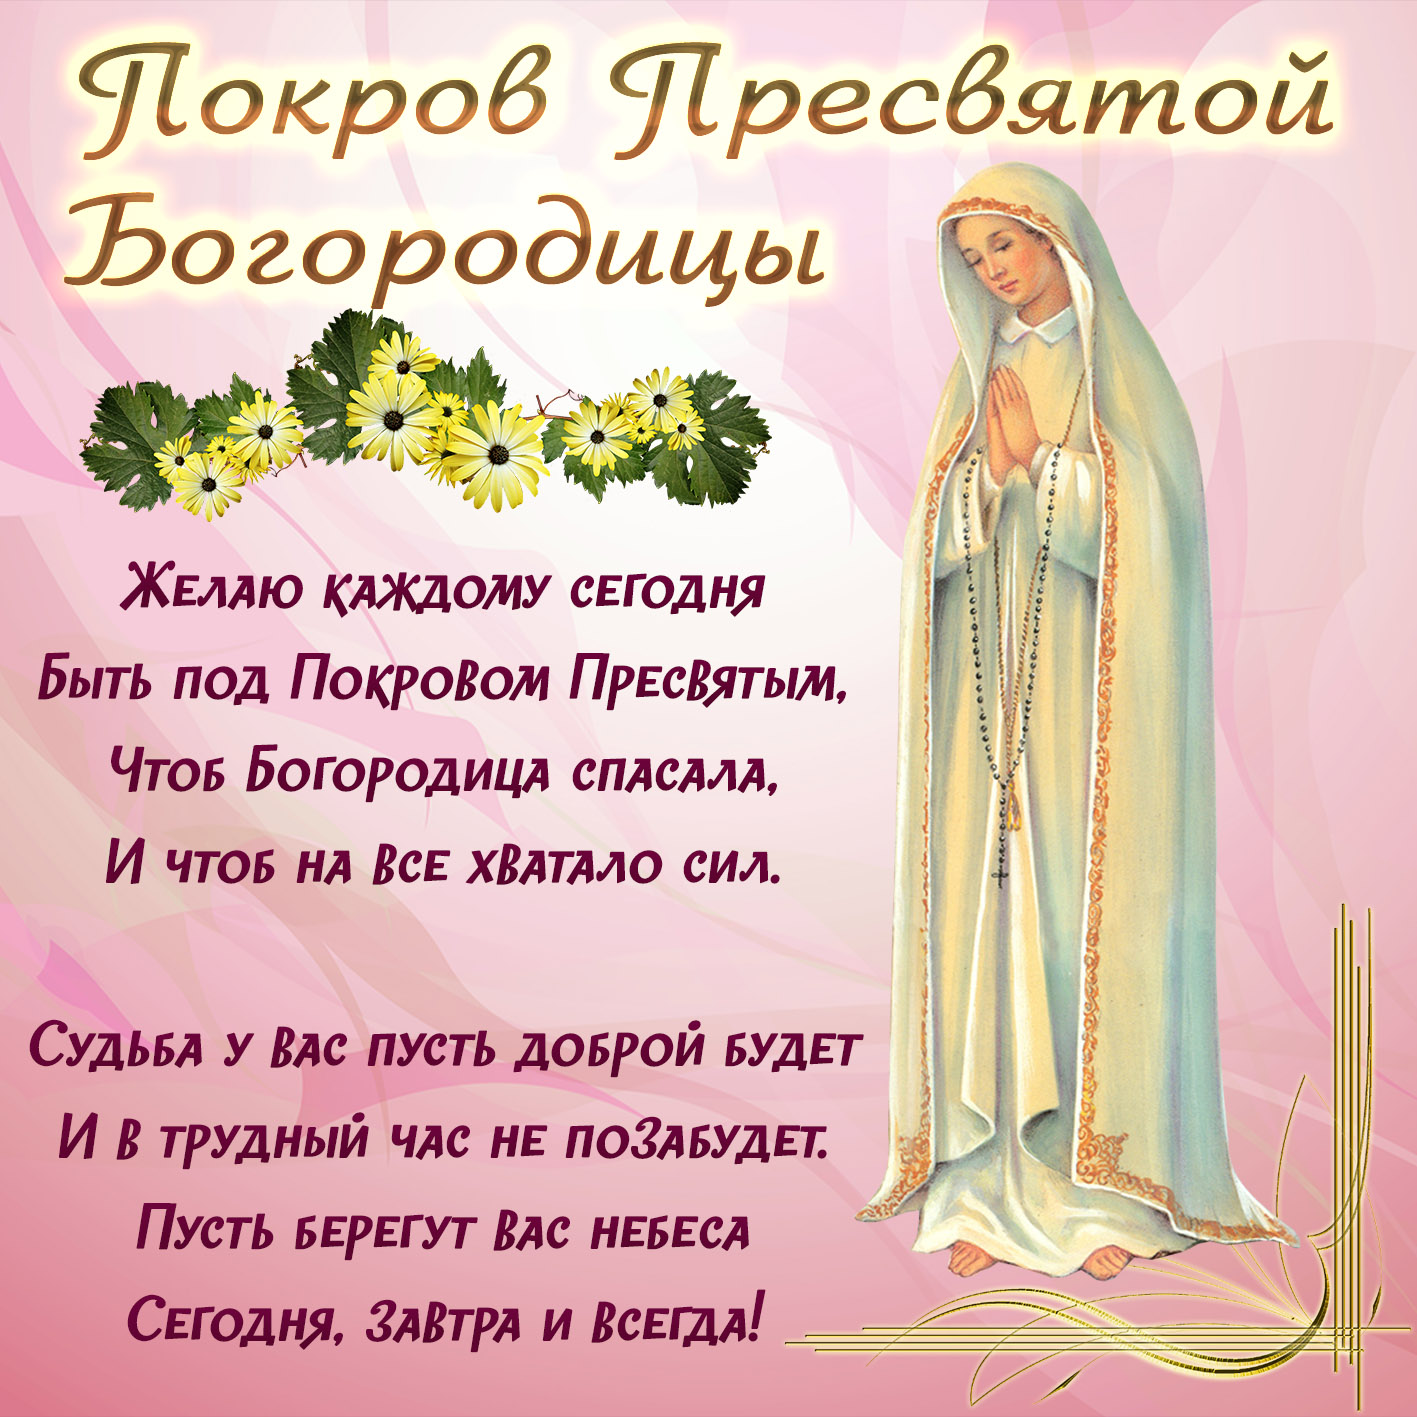 Открытка православная с пожеланием на покров пресвятой богородицы